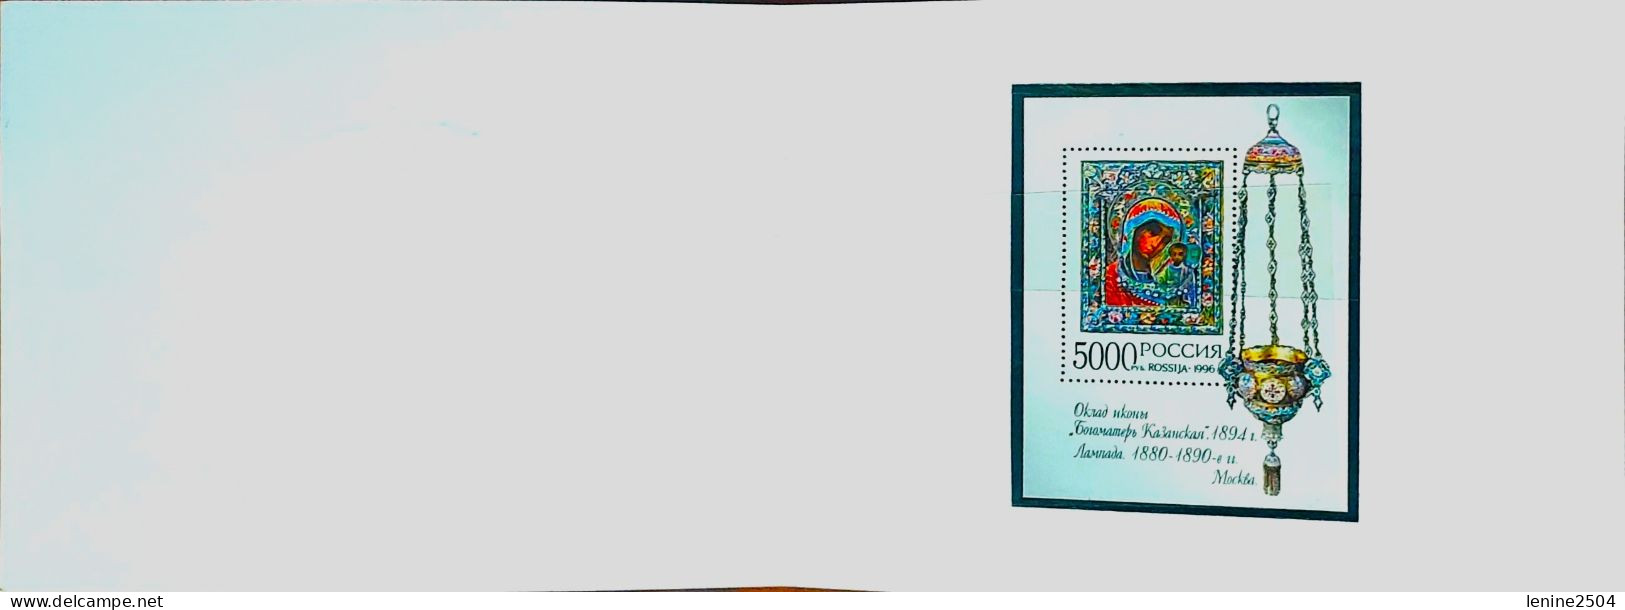 Russie 1996 Yvert Bloc N° 233 ** Emission 1er Jour Carnet Prestige Folder Booklet. - Unused Stamps